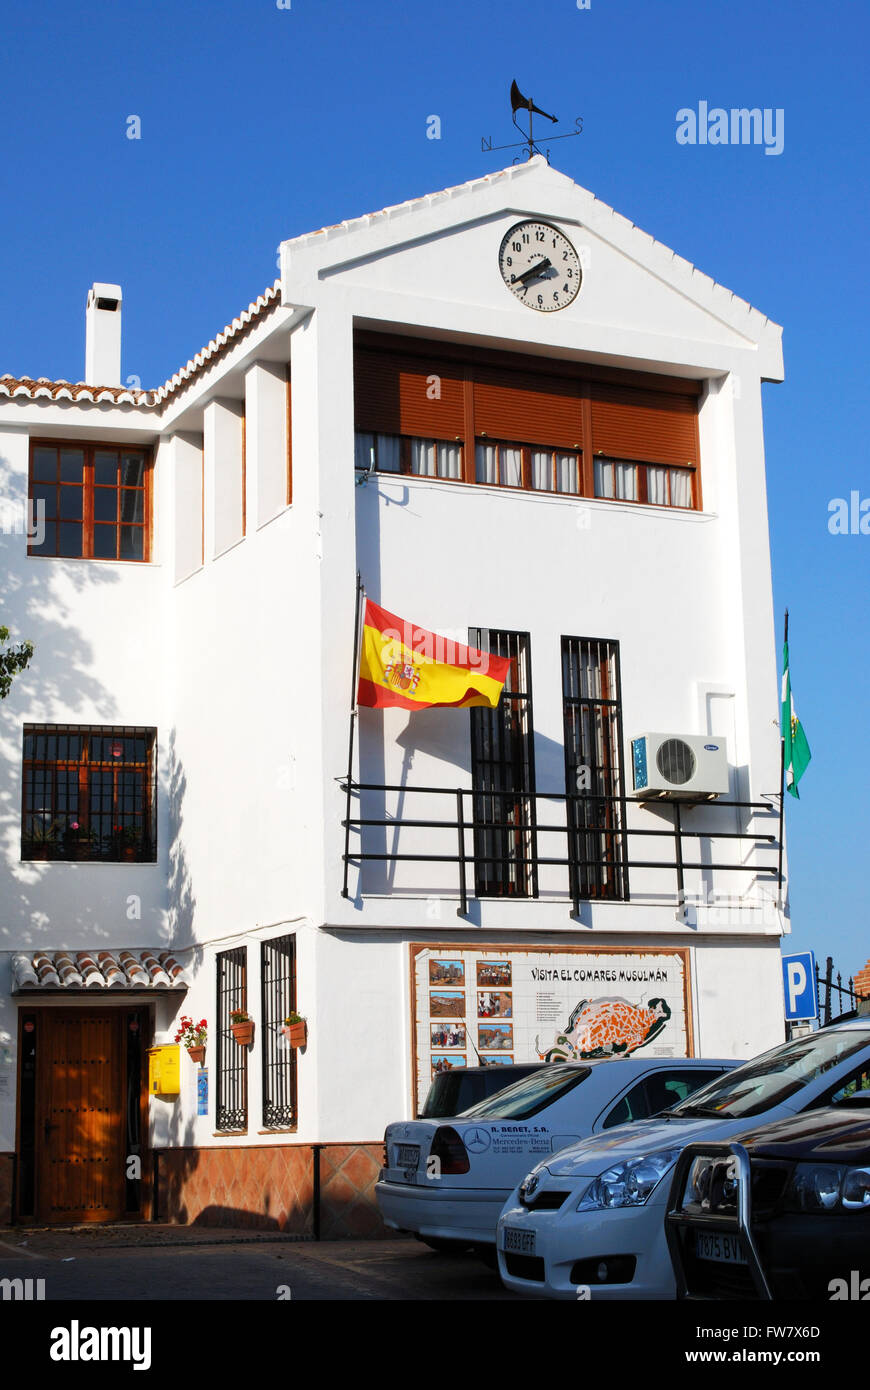 Rathaus mit Uhr und eine spanische Flagge auf dem Stadtplatz, Comares, Region Axarquia, Provinz Malaga, Andalusien, Spanien. Stockfoto